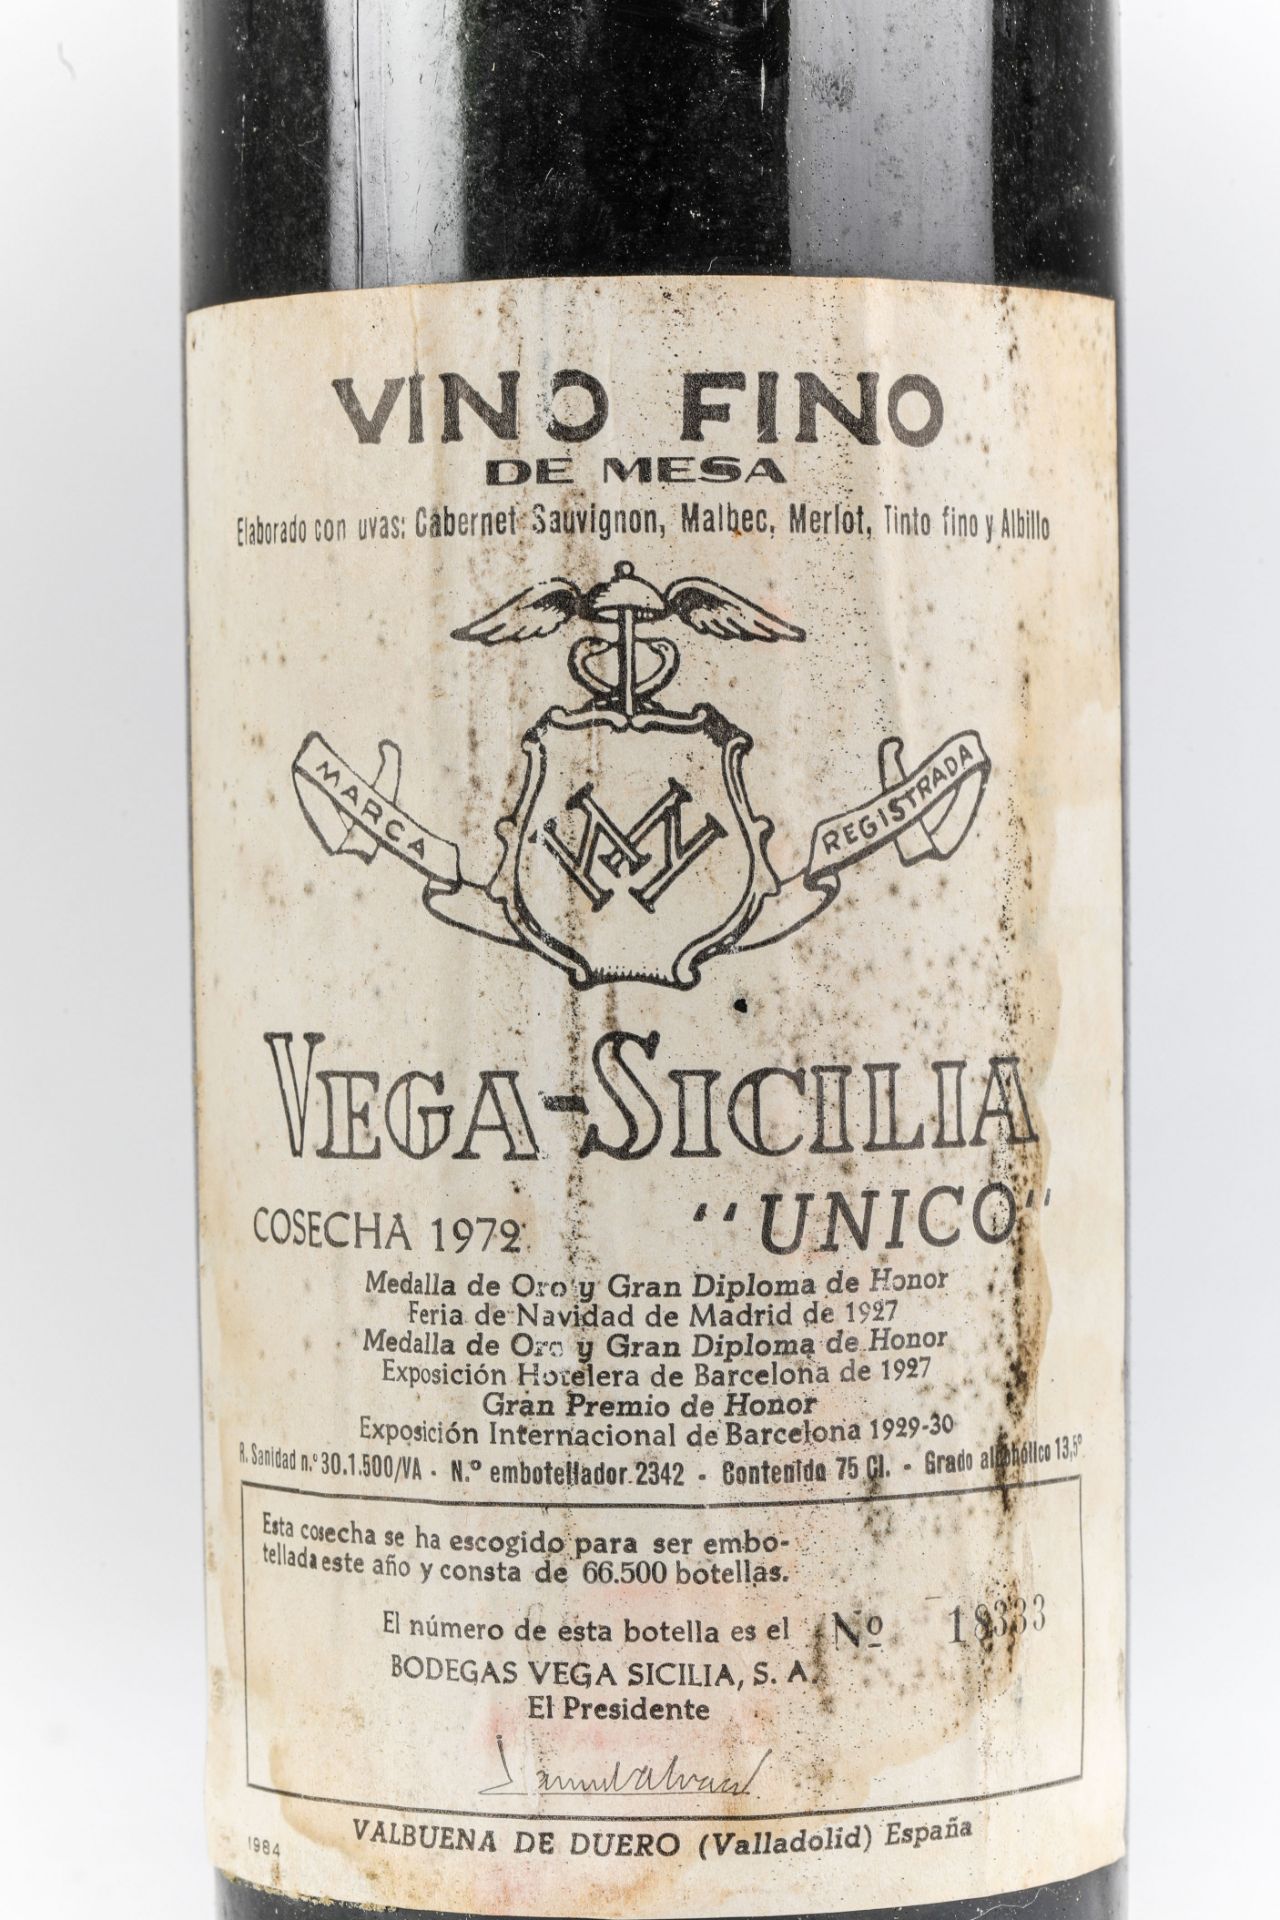 VEGA SICILIA UNICO. 1972. Ribera del Duero. Bouteille N°18333 sur production 66 500 bouteilles. - Bild 2 aus 4